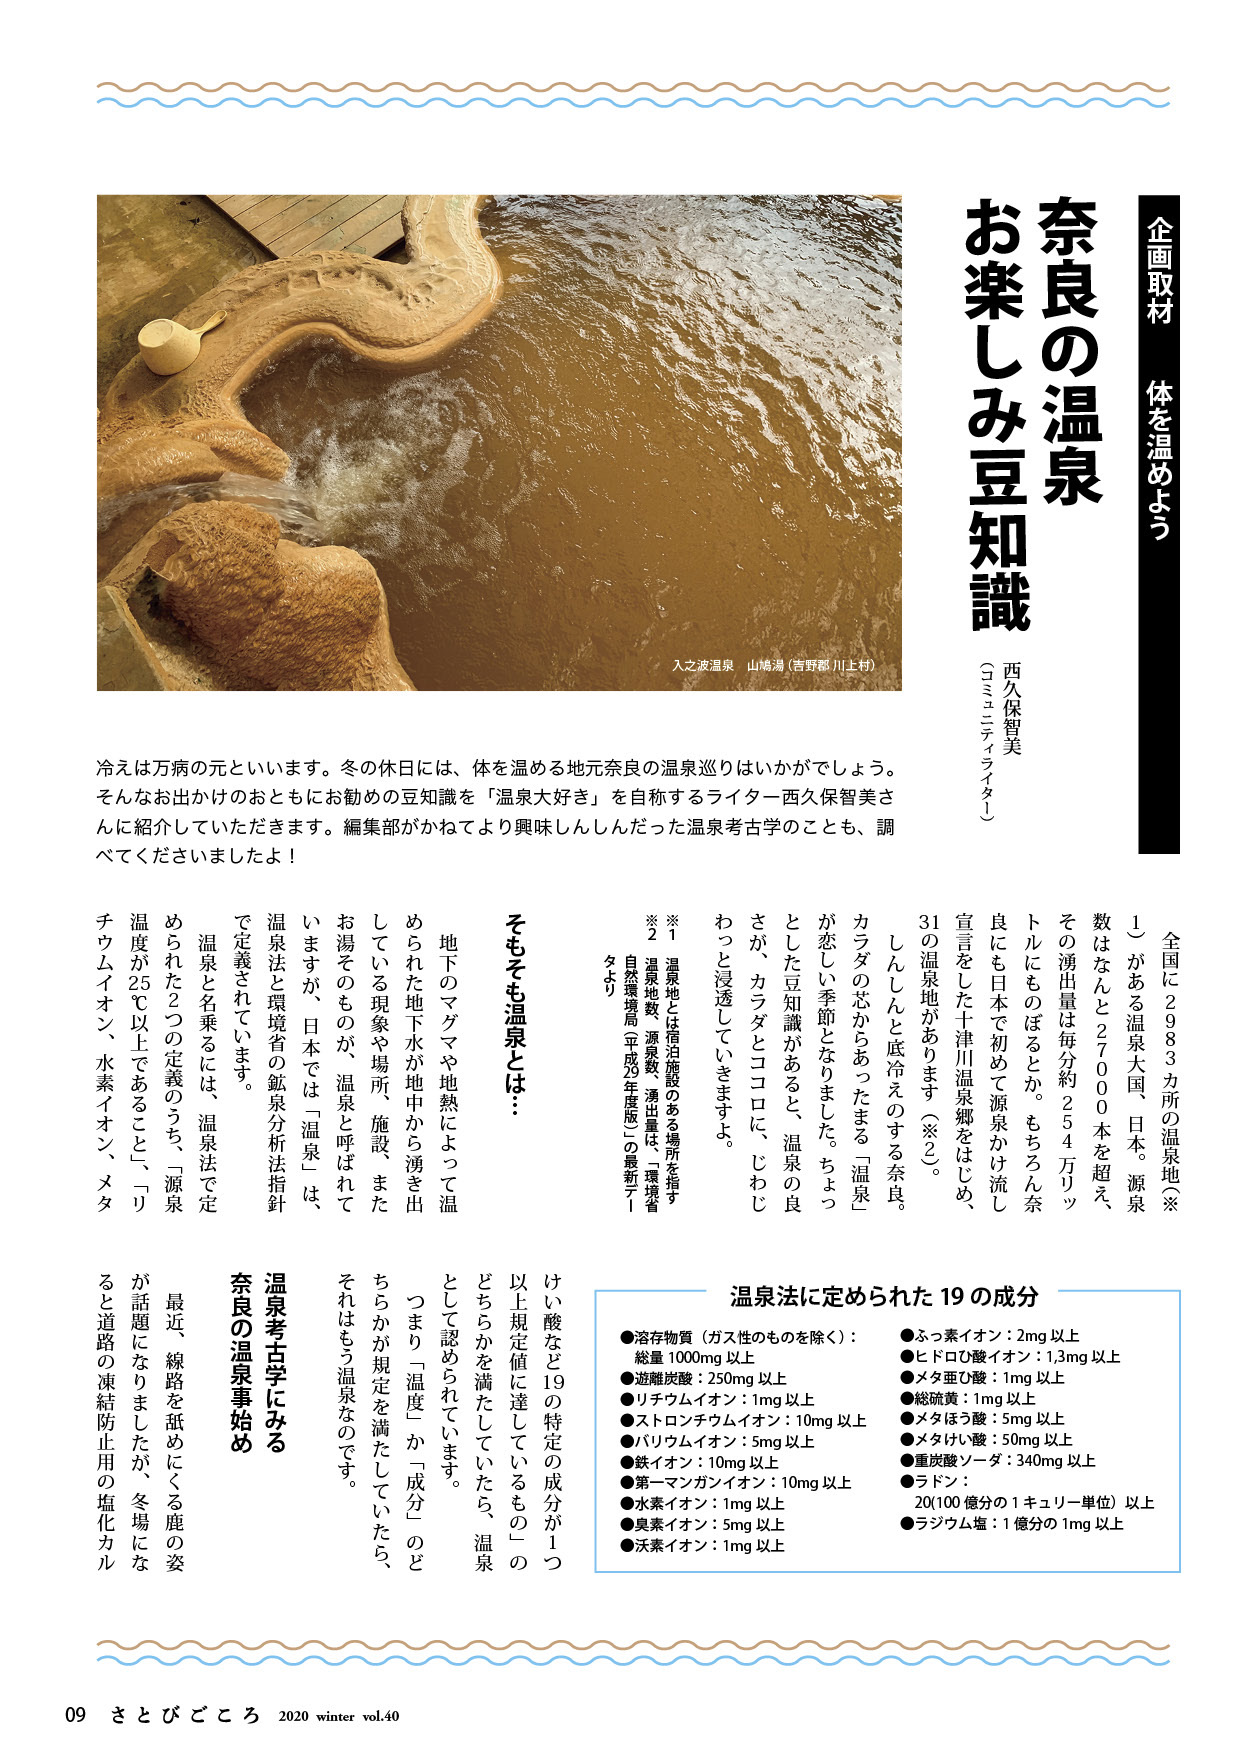 企画 奈良の温泉 お楽しみ豆知識 さとびごころ